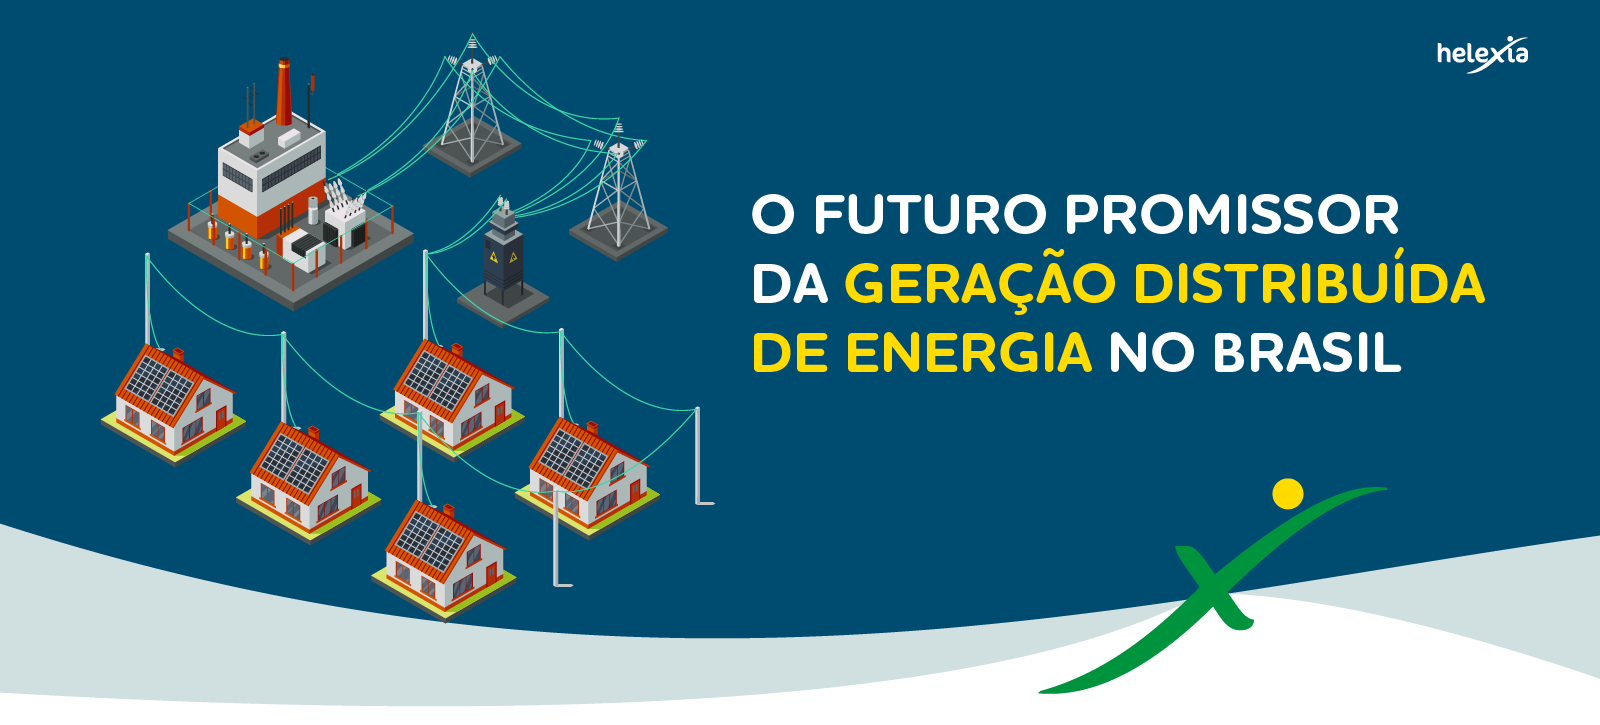 O FUTURO PROMISSOR DA GERAÇÃO DISTRIBUÍDA DE ENERGIA NO BRASIL